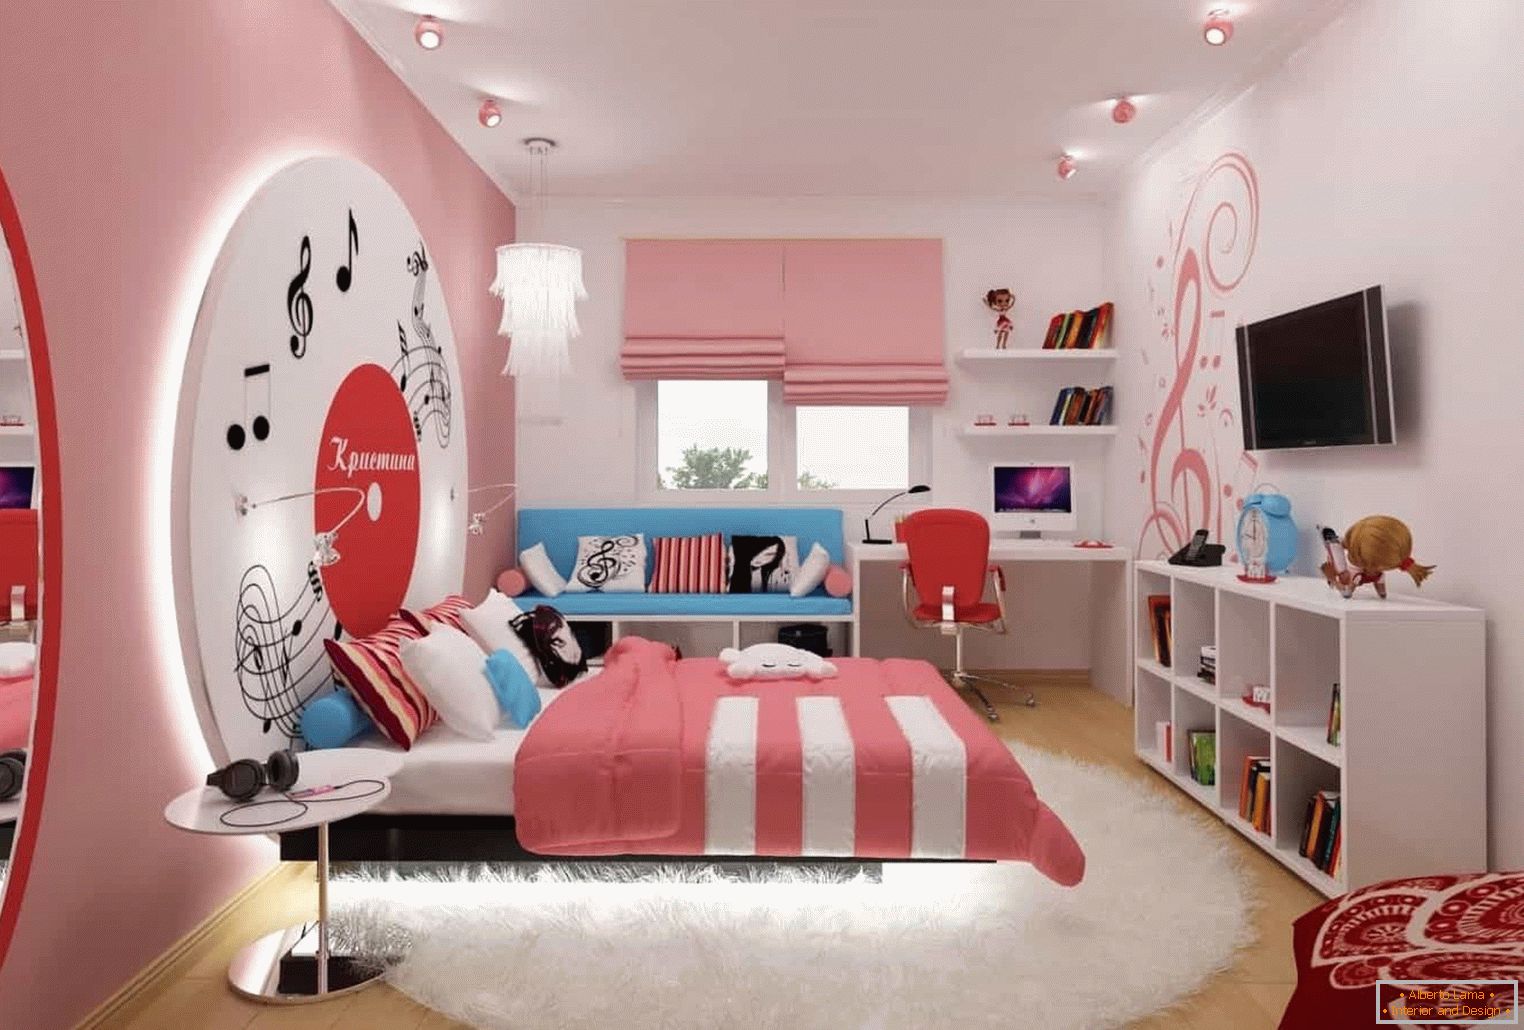 Room in pink tones